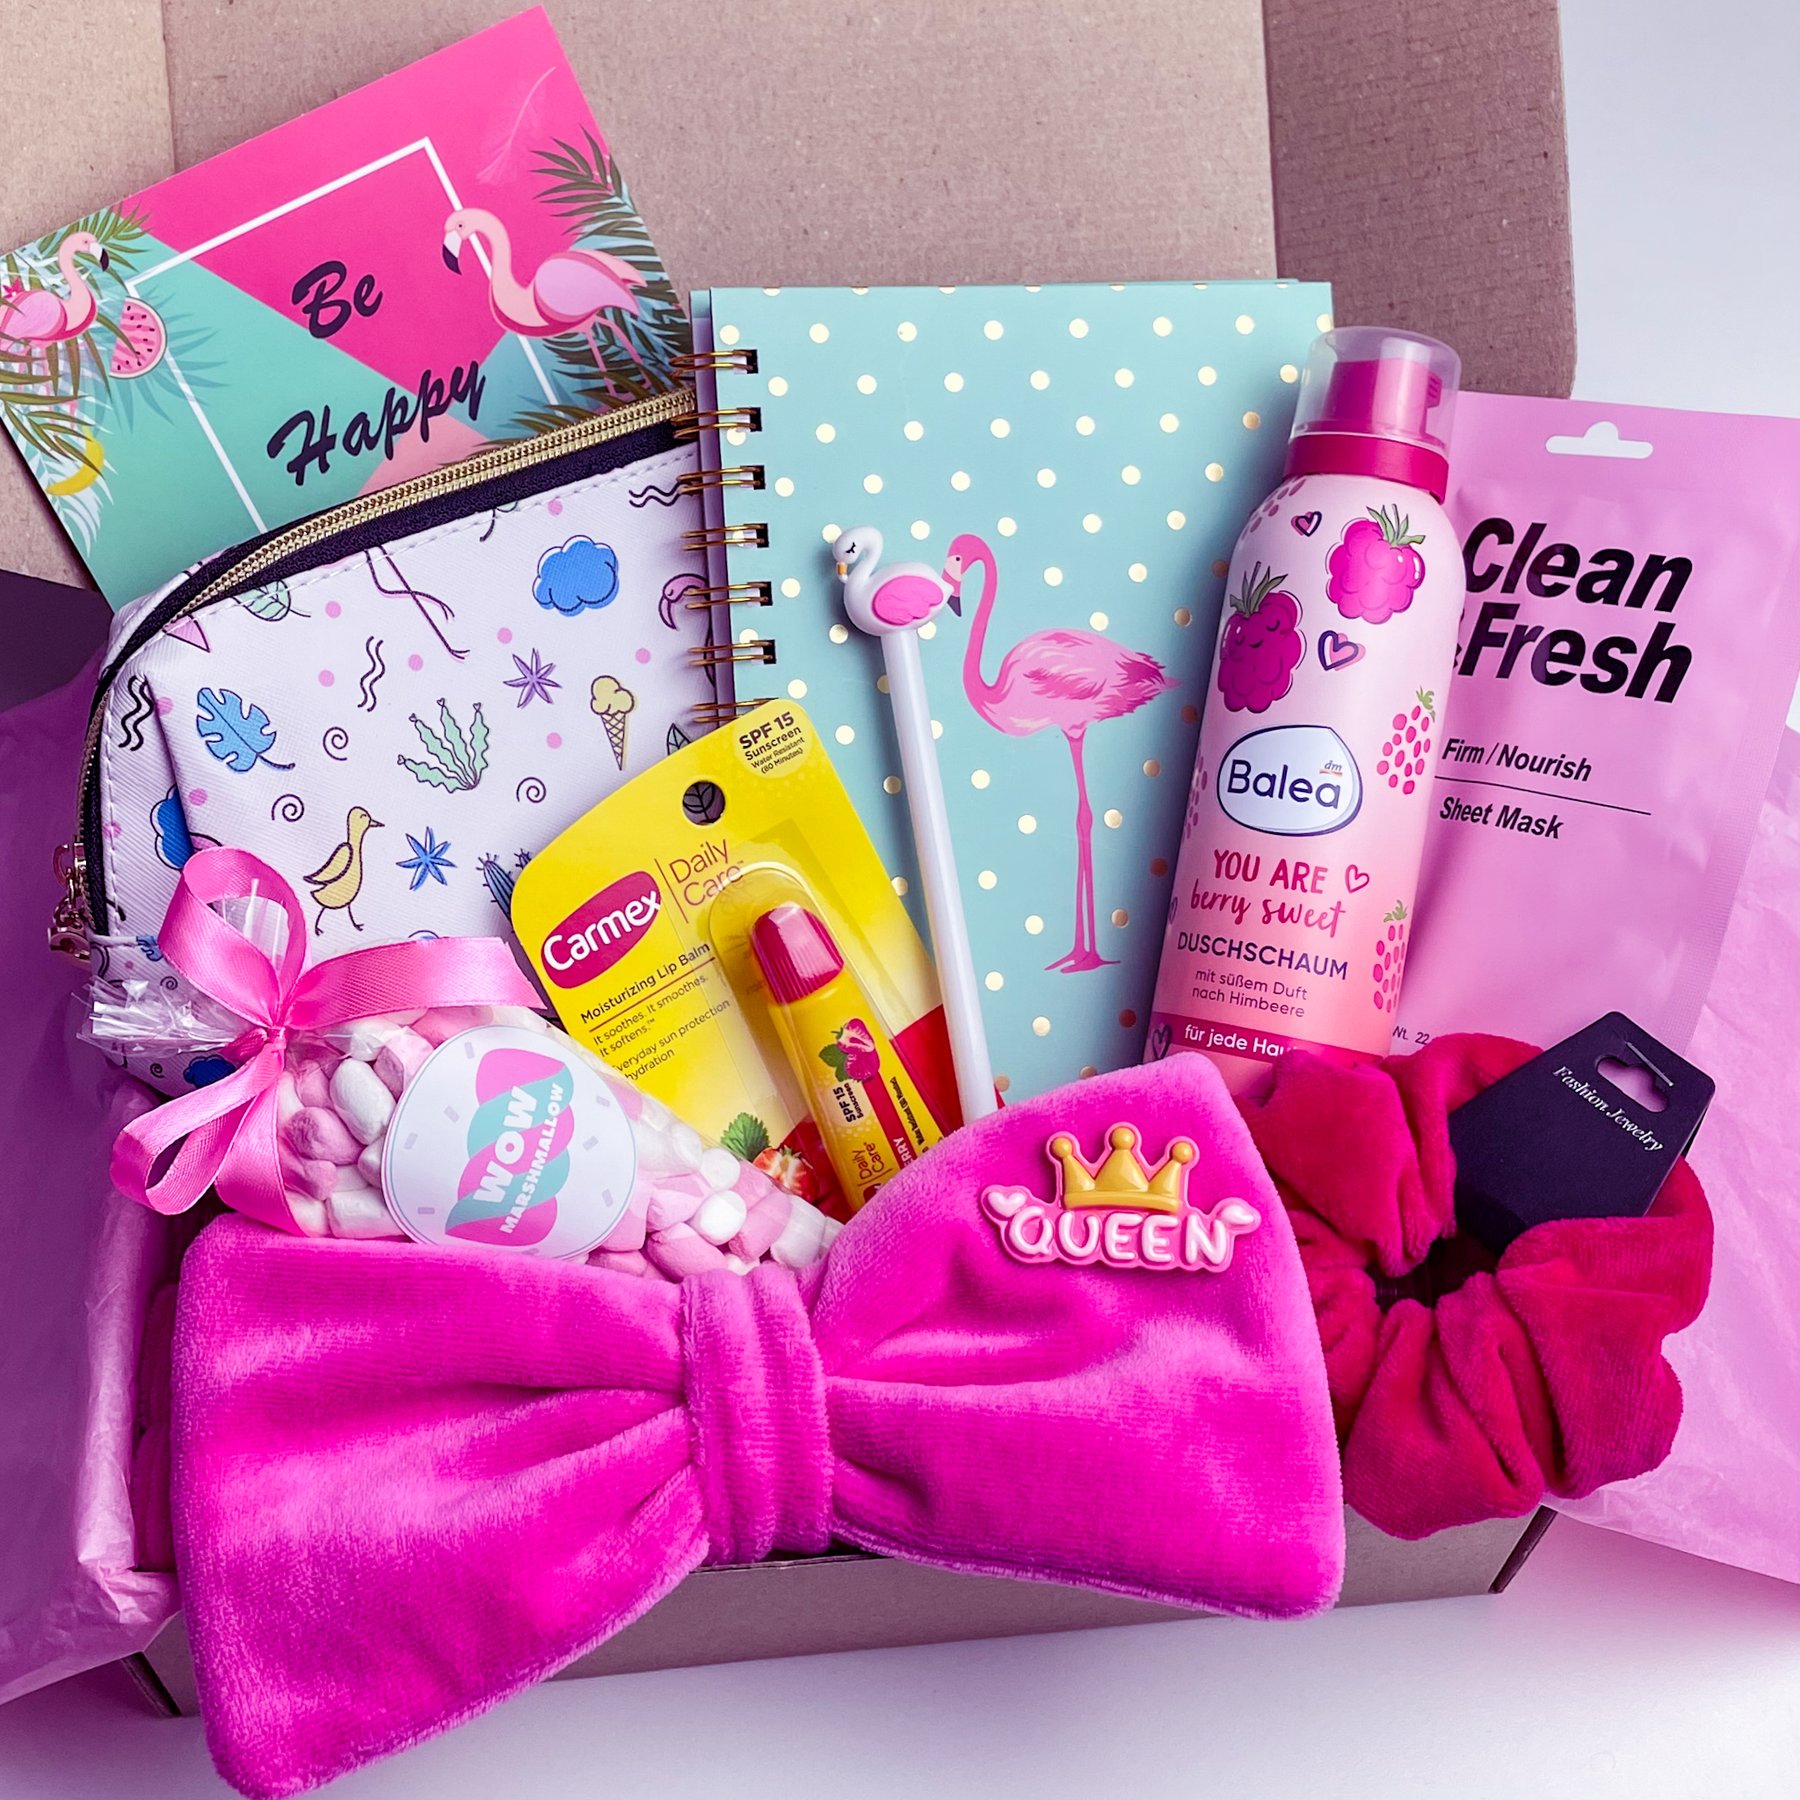 Подарунок бокс для дівчинки Wow Boxes «Flamingo Box №6»